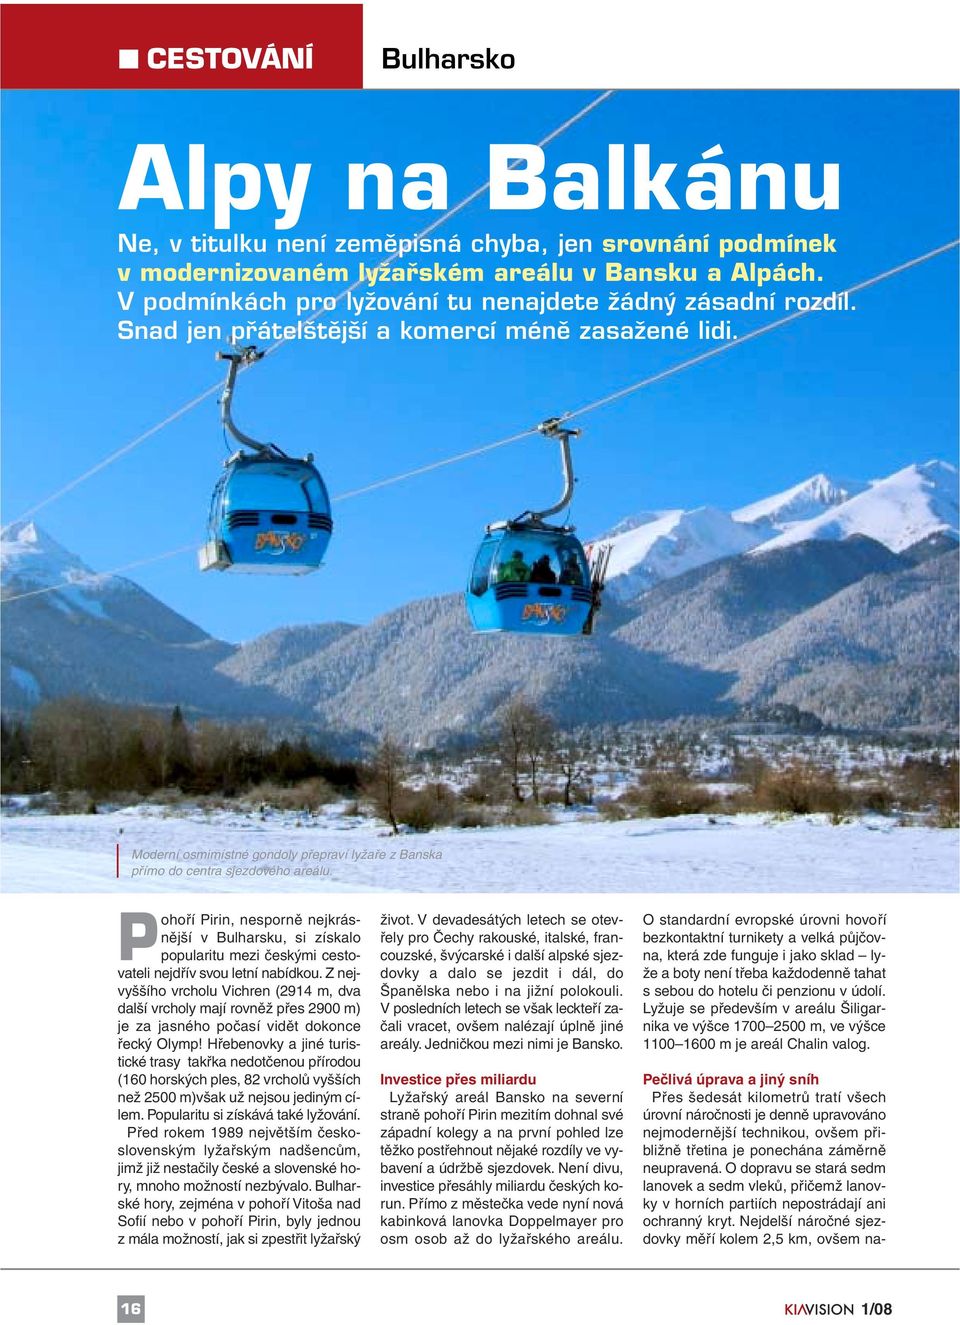 Pohoří Pirin, nesporně nejkrásnější v Bulharsku, si získalo popularitu mezi českými cestovateli nejdřív svou letní nabídkou.